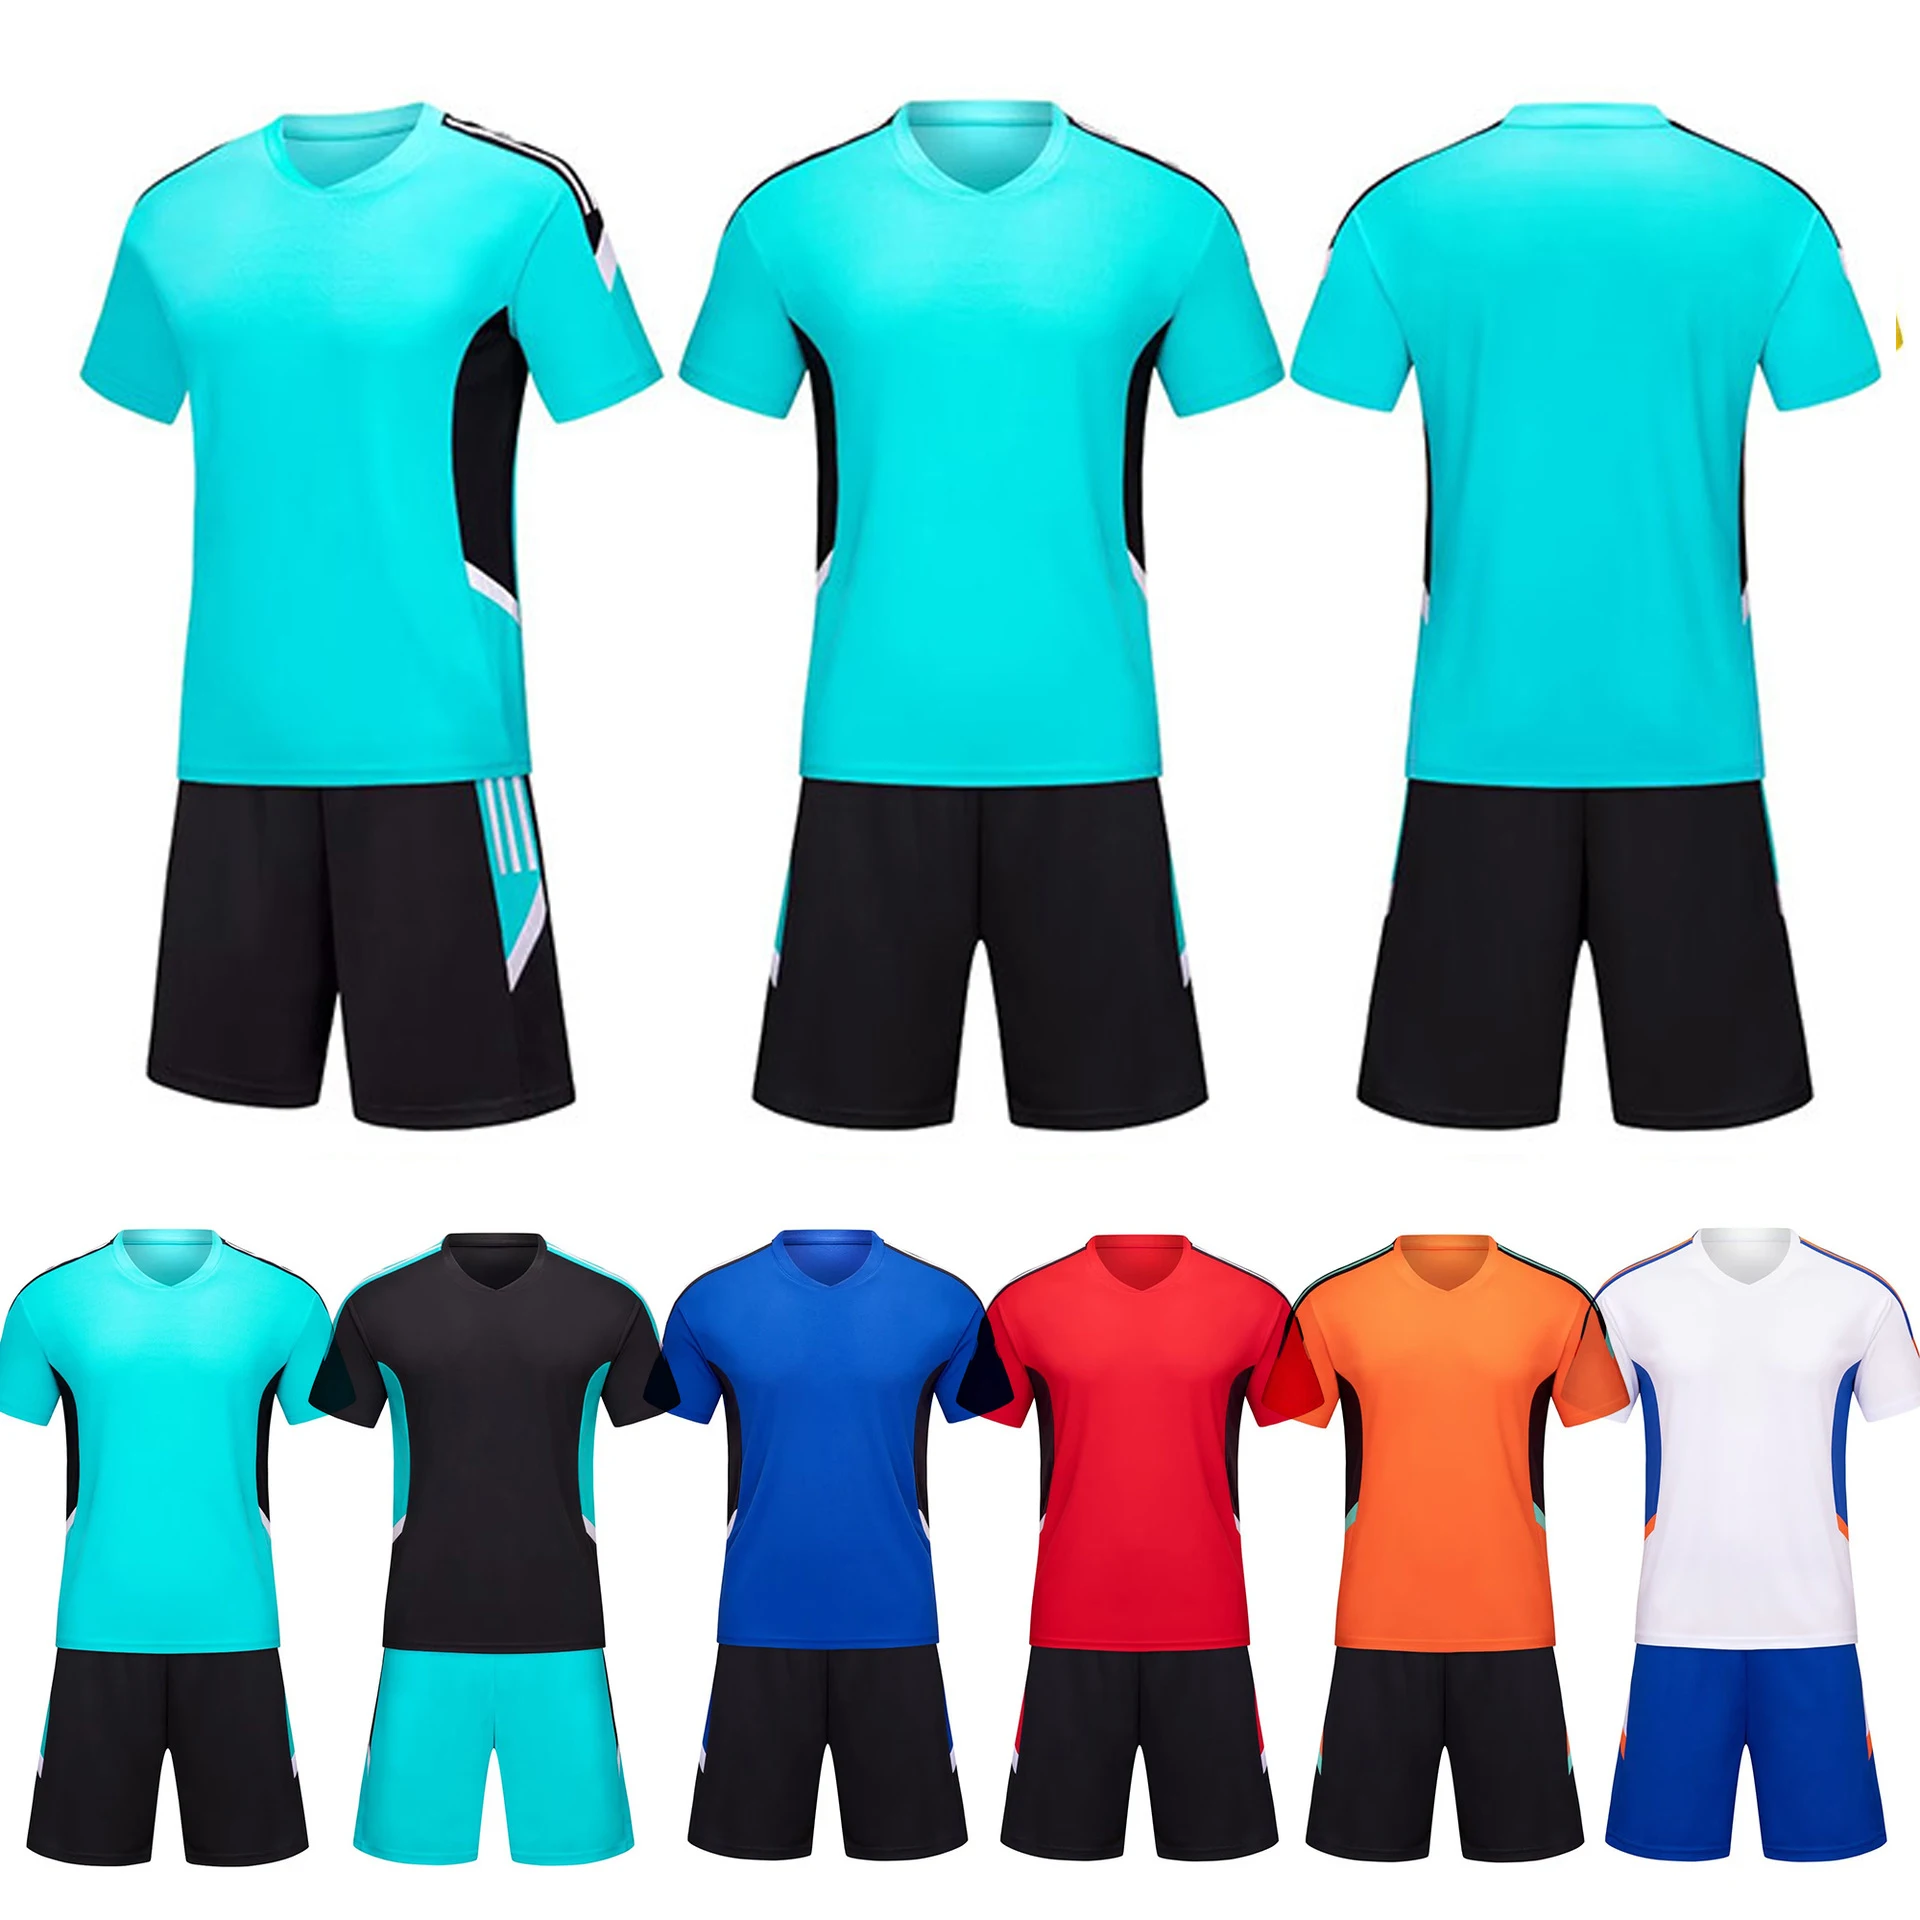 Футбольная форма, изготовленная на заказ футбольная тренировочная одежда для взрослых и детей, одежда для мужчин и мальчиков, комплекты футбольной одежды с коротким рукавом и принтом